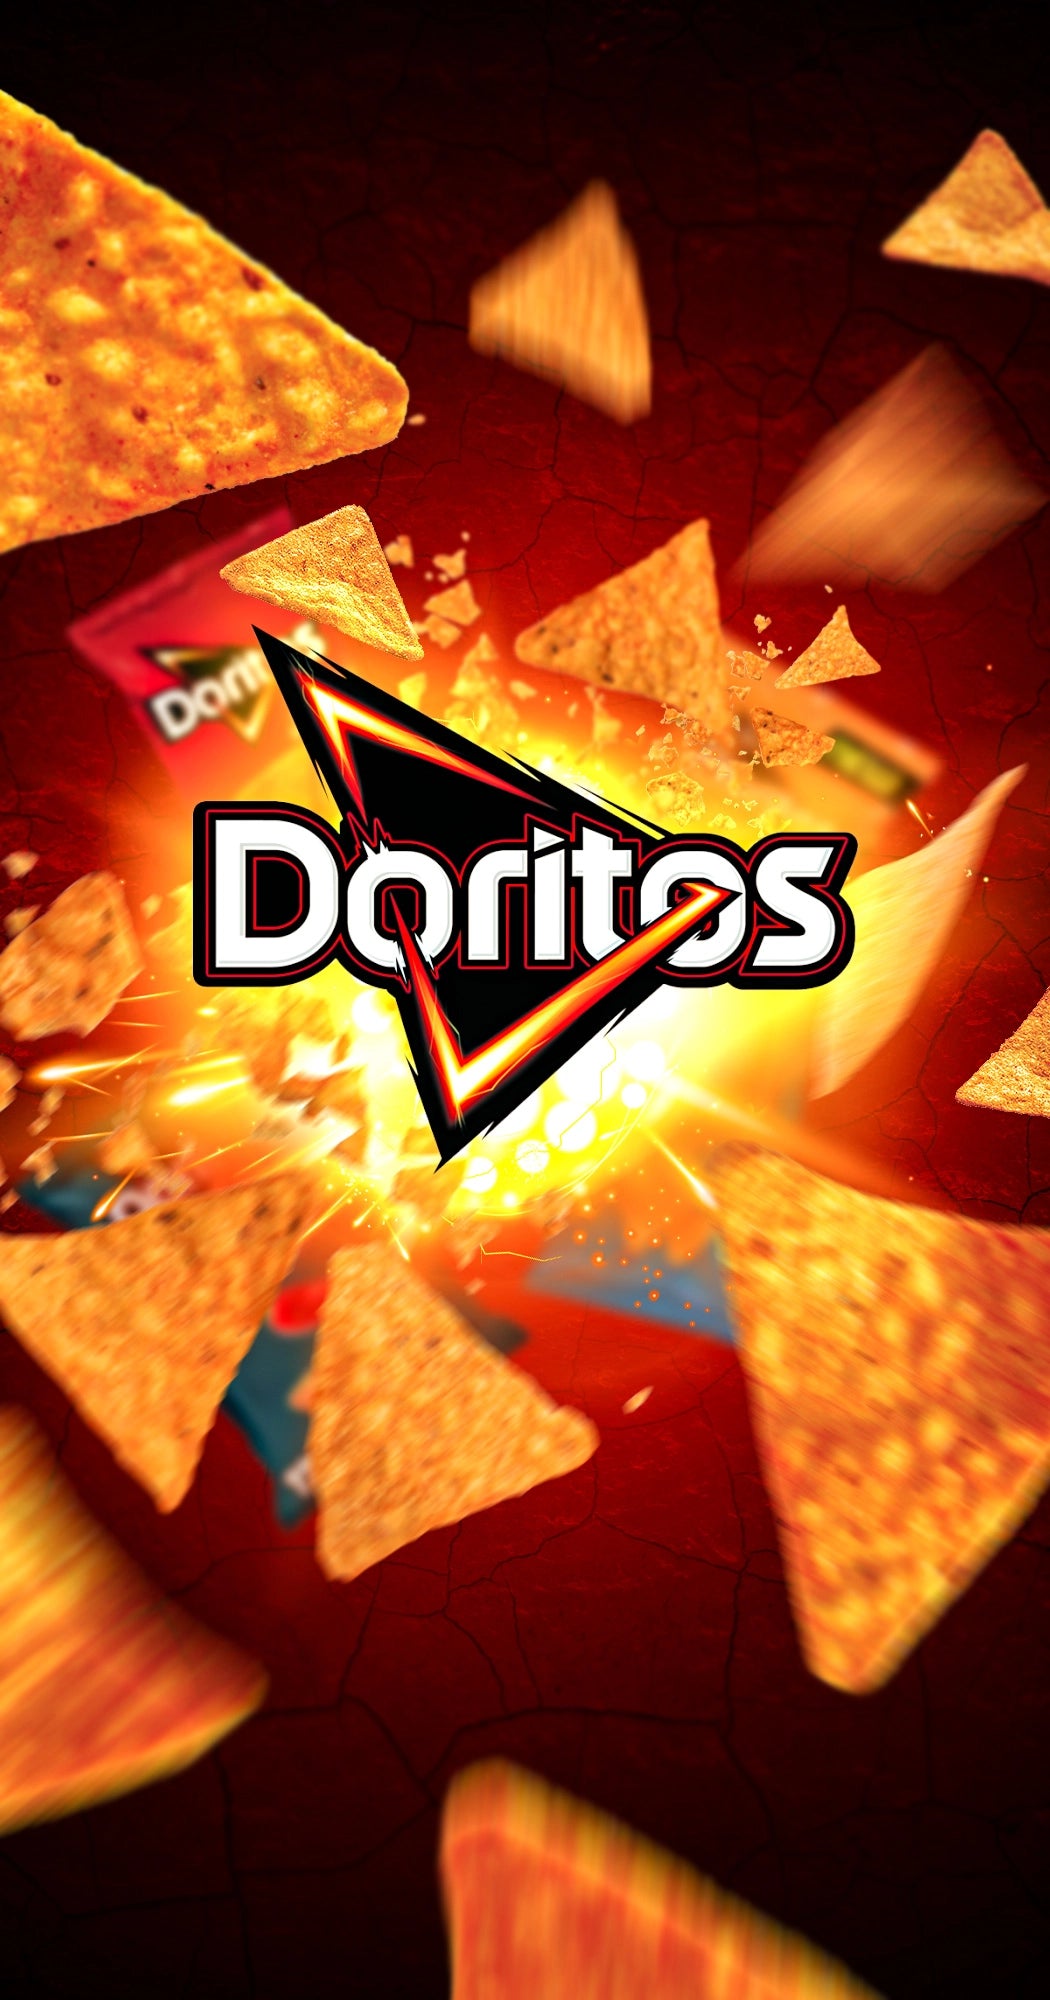 Doritos collection banner mobile